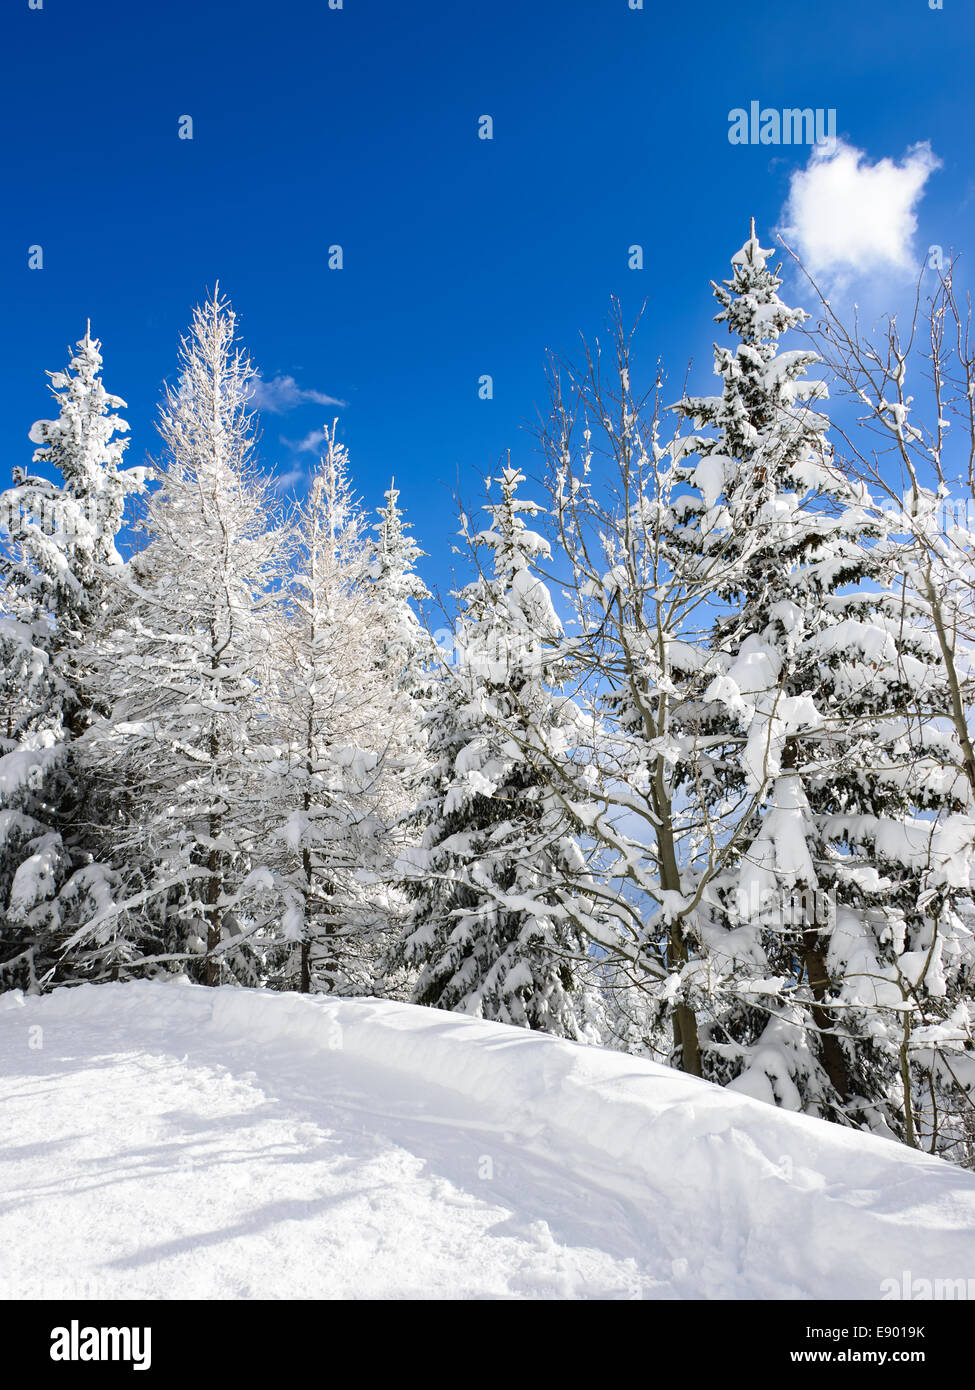 Schnee-Bäume unter blauem Himmel in einem Resort-Skigebiet im Winter. Stockfoto